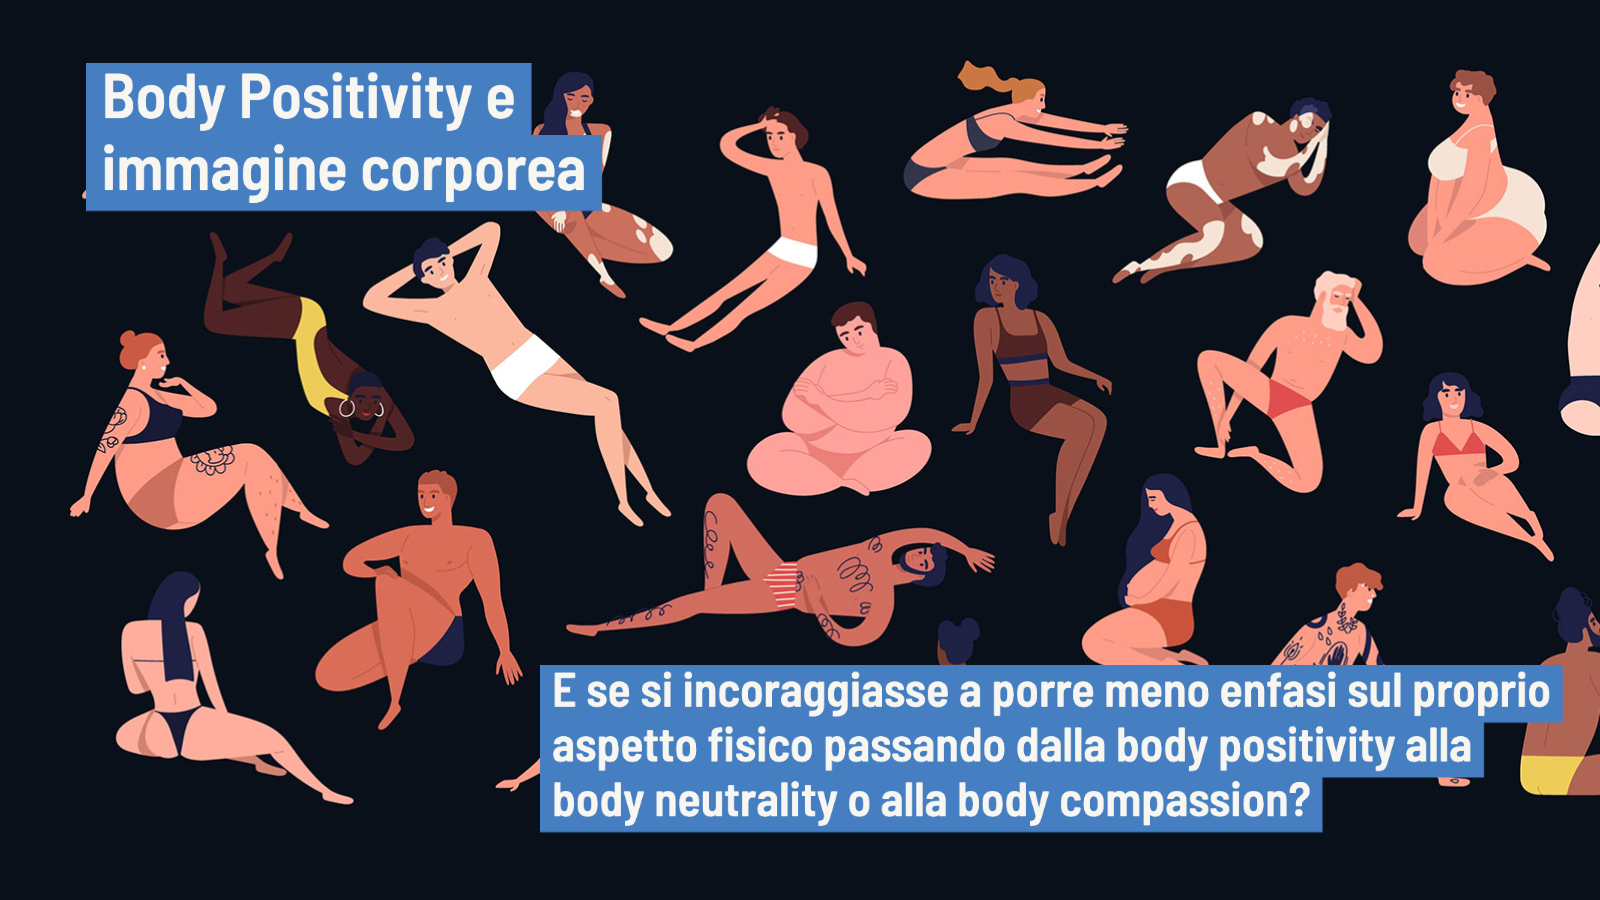 Body positivity o body neutrality - L'Immagine corporea nei social network